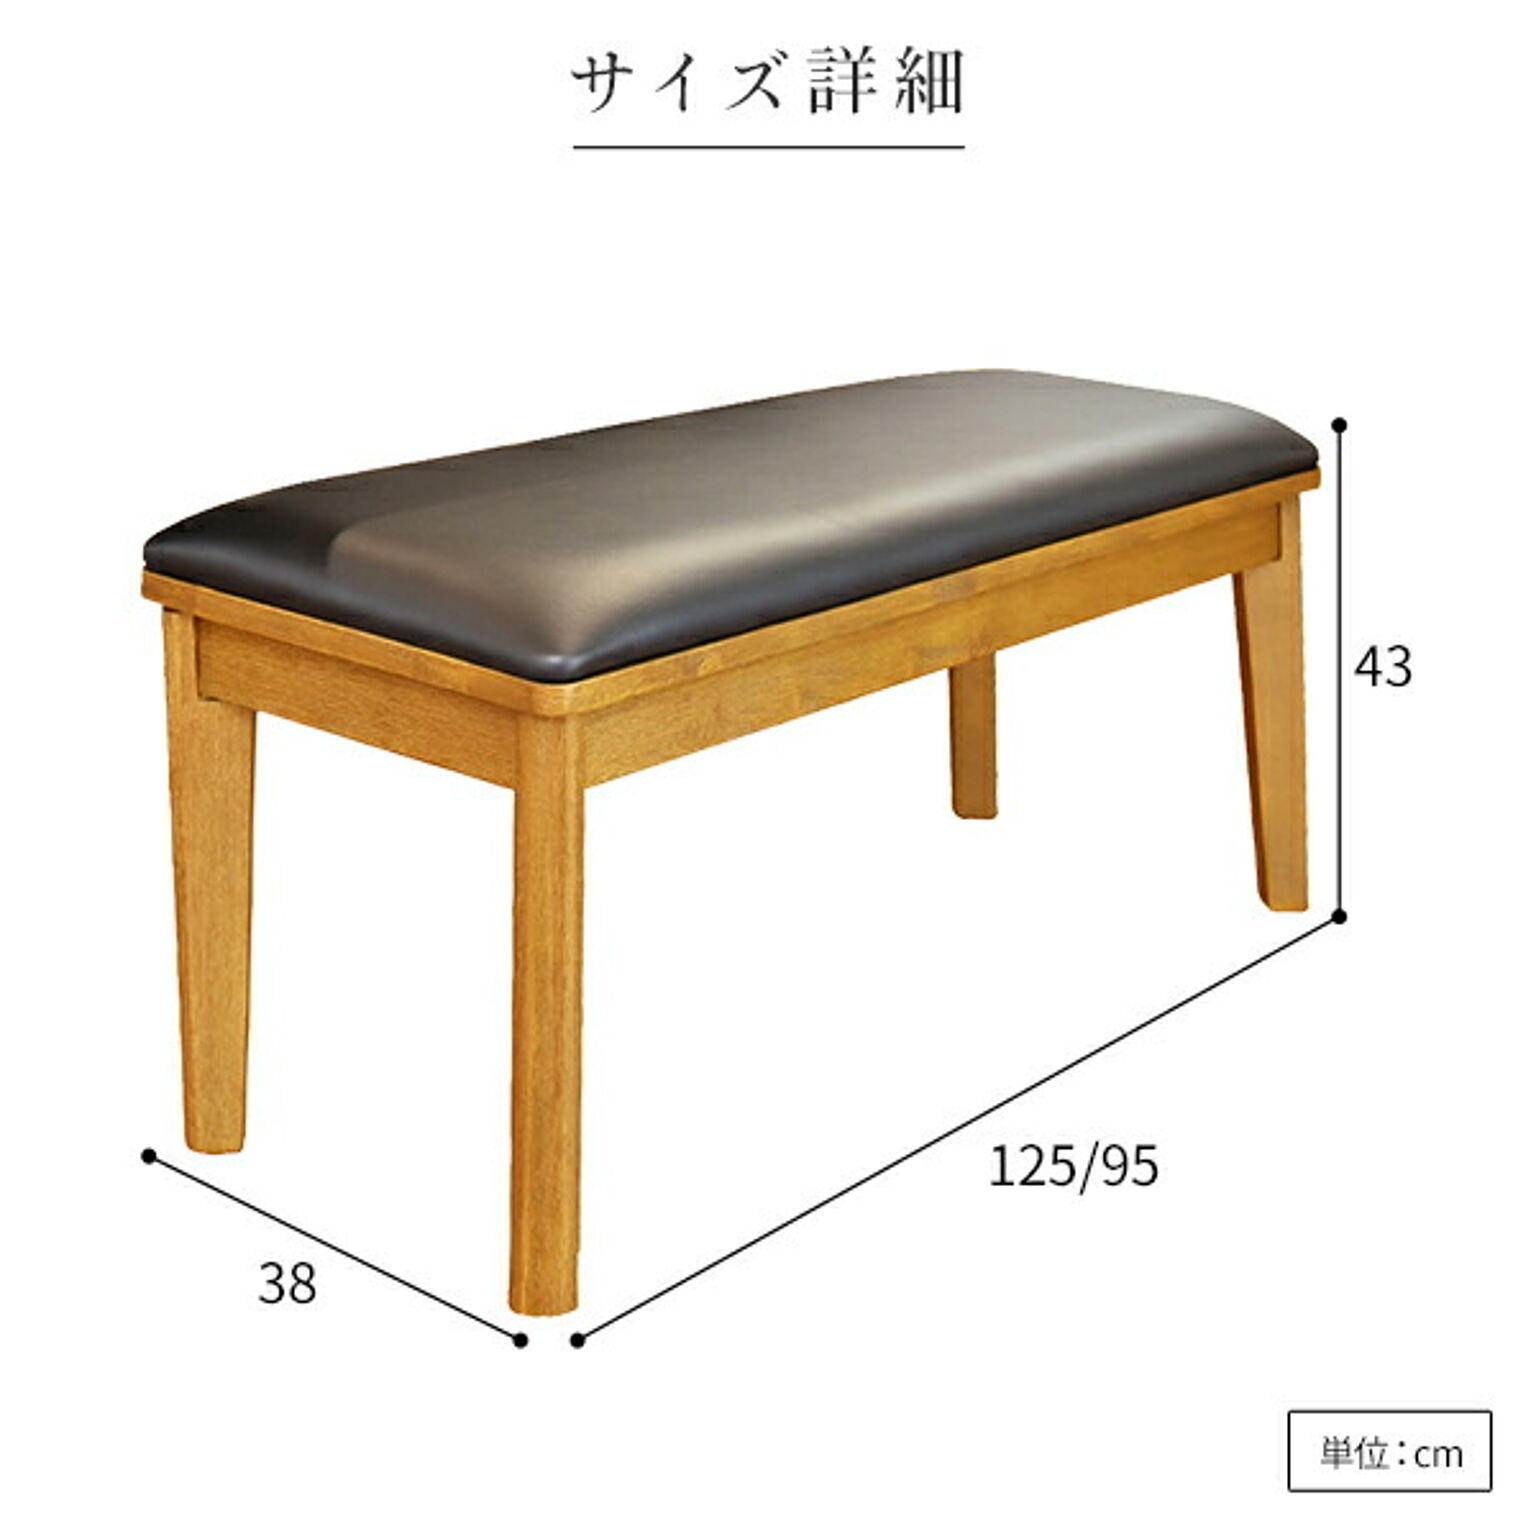 ダイニングベンチ/食卓椅子 ナチュラル 幅125cm×奥行38cm PVC 木製 組立品 〔リビング 在宅ワーク テレワーク〕